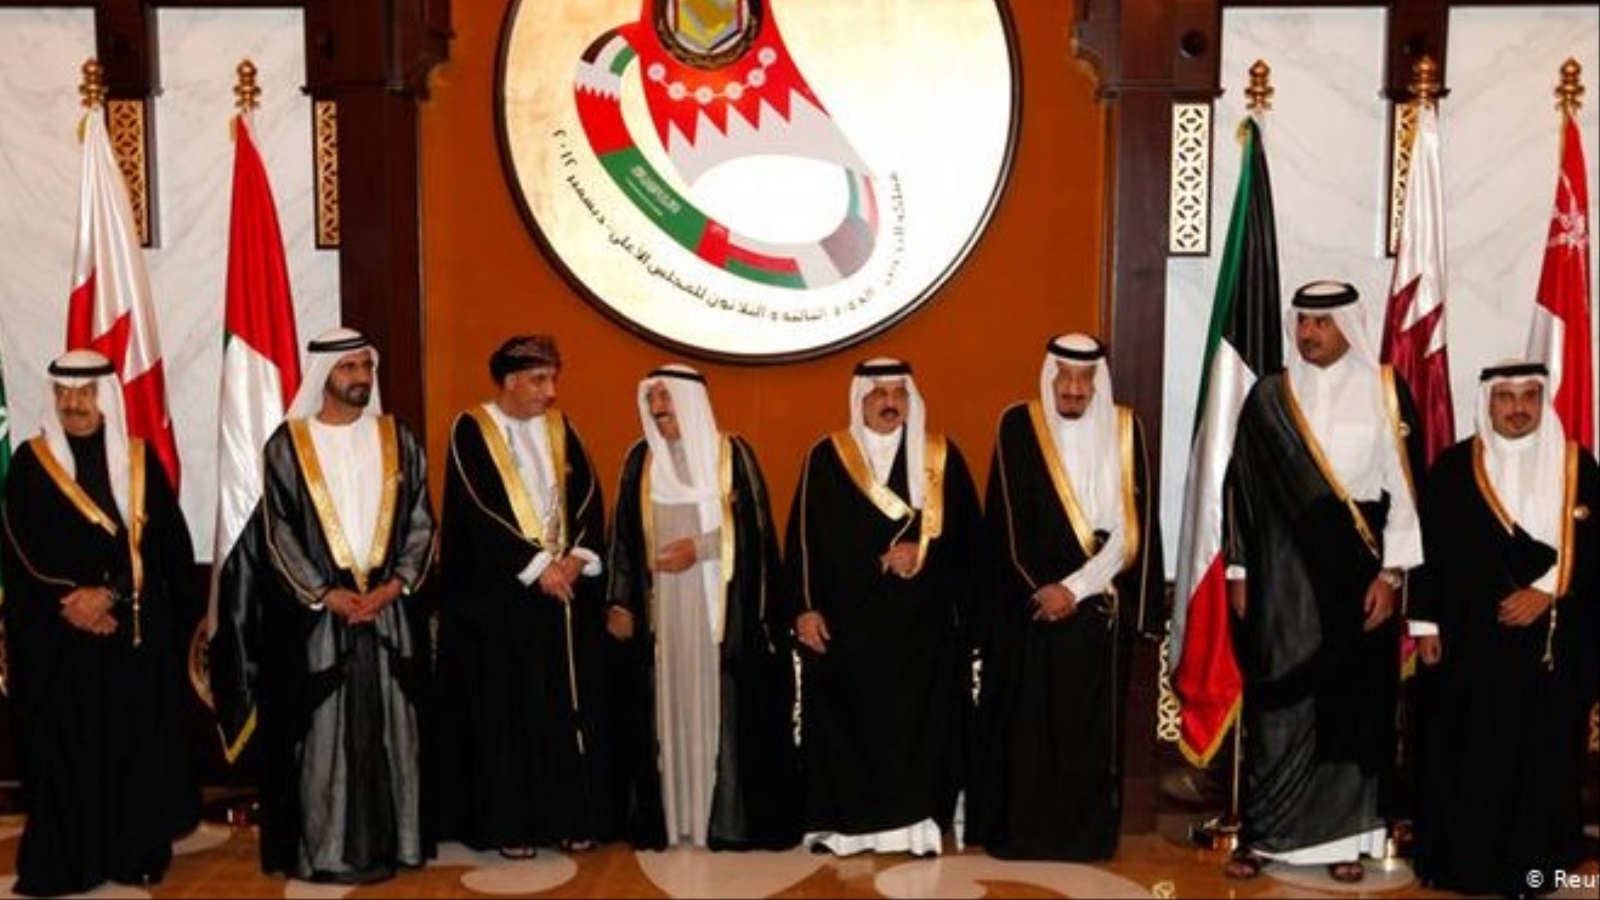 عزز احتواء قطر خليجيا اتفاقية الأزمة الخليجية الأولى عام ٢٠١٤ والتي انتهت بتفاهمات (قطرية - خليجية) حدت من المخاوف السياسية الكبرى التي كان يروج لها في الأوساط الخليجية السعودية والإماراتية